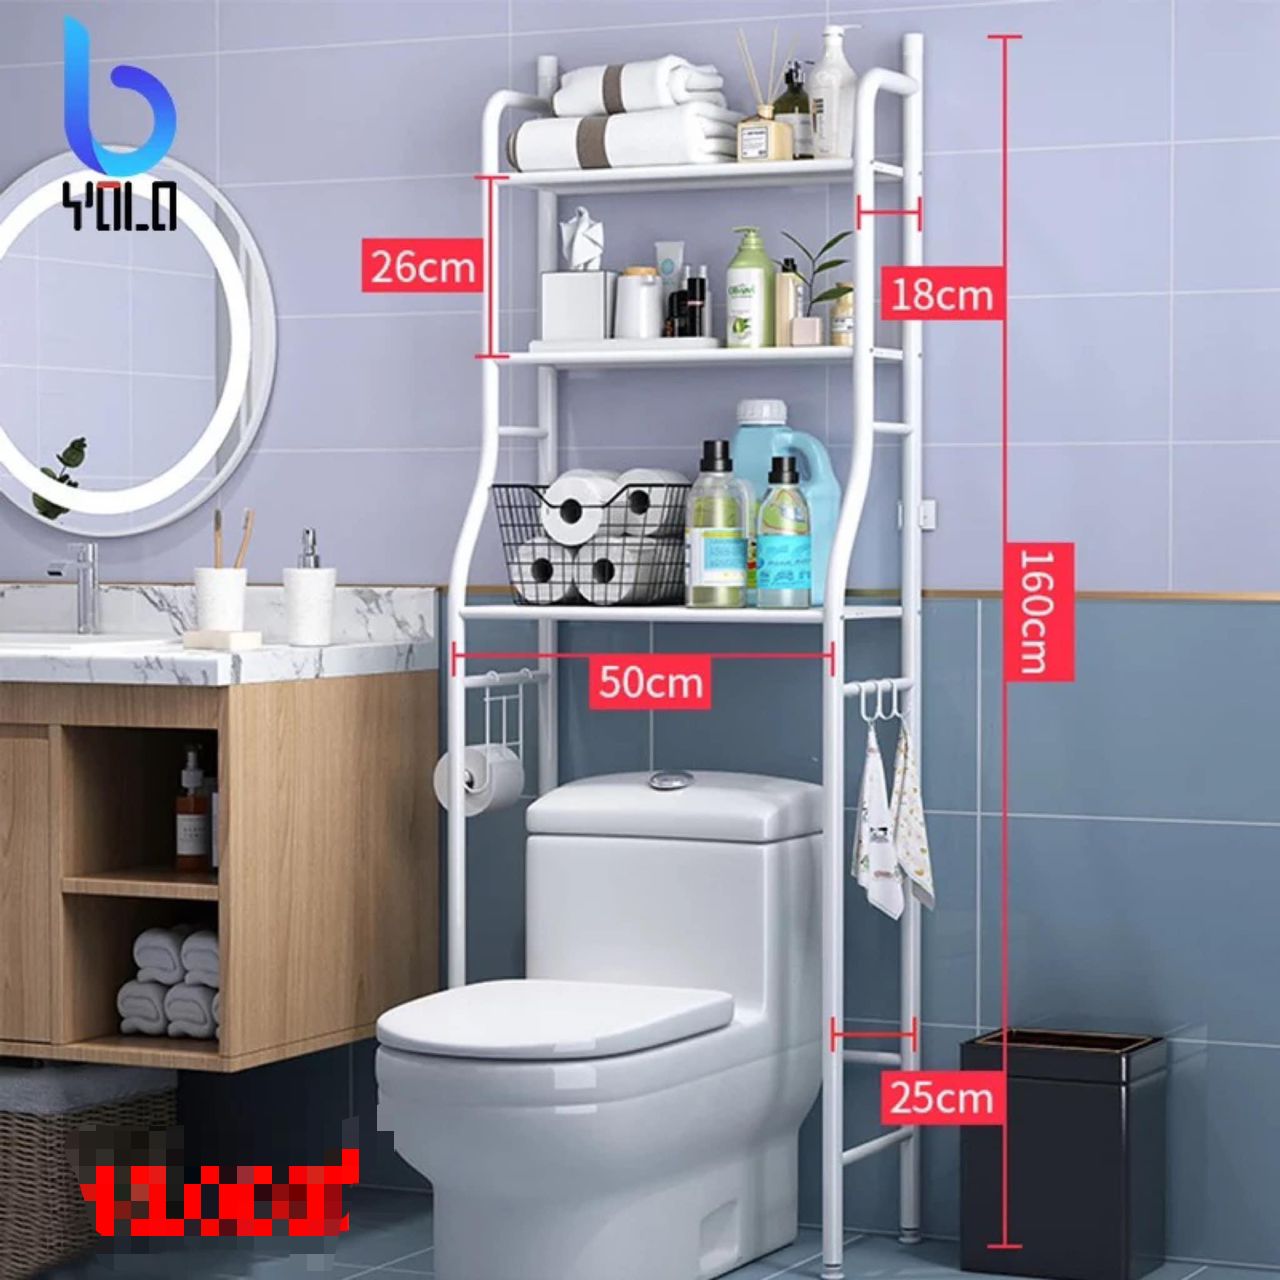 WC optimisé :-) Intelligent le meuble recyclé dans les toilette!